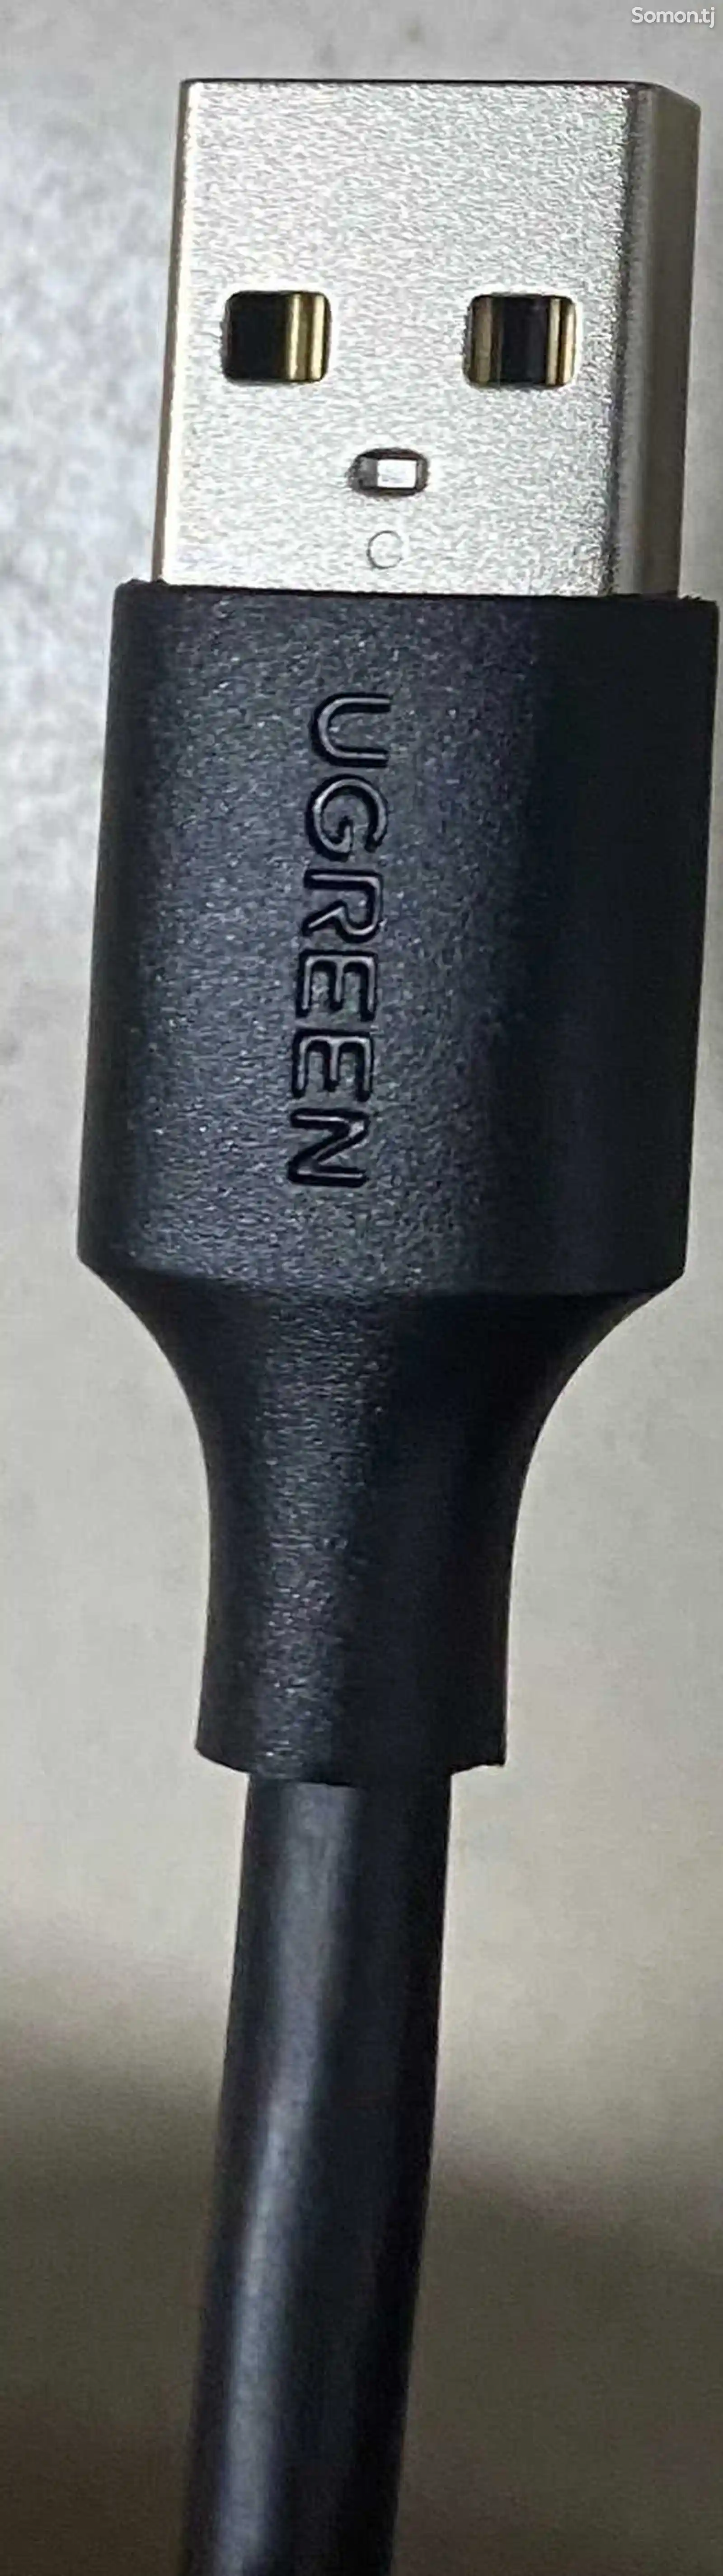 USB удлинитель Ugreen 5m-3